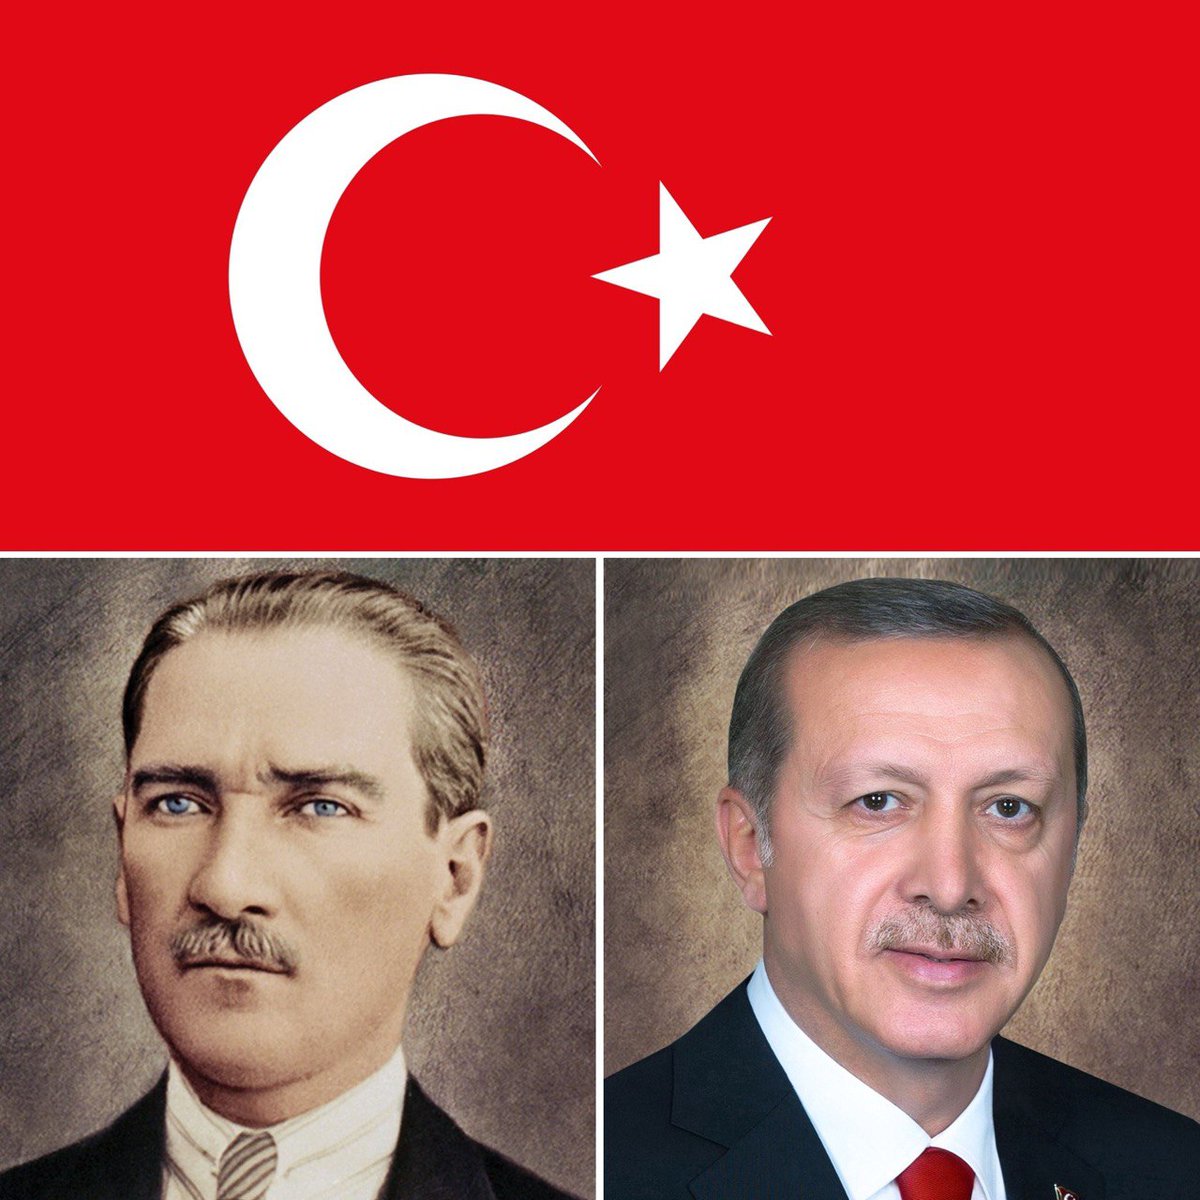 DEM Parti yöneticilerinin, Diyarbakır Sur Belediyesi mazbata töreni sonrasında, makam odasında bulunan Cumhuriyetimizin kurucusu Gazi Mustafa Kemal Atatürk ve Cumhurbaşkanımız Sayın Recep Tayyip Erdoğan’ın fotoğraflarına yönelik hakaret içeren sözlerini kınıyorum. Son seçim